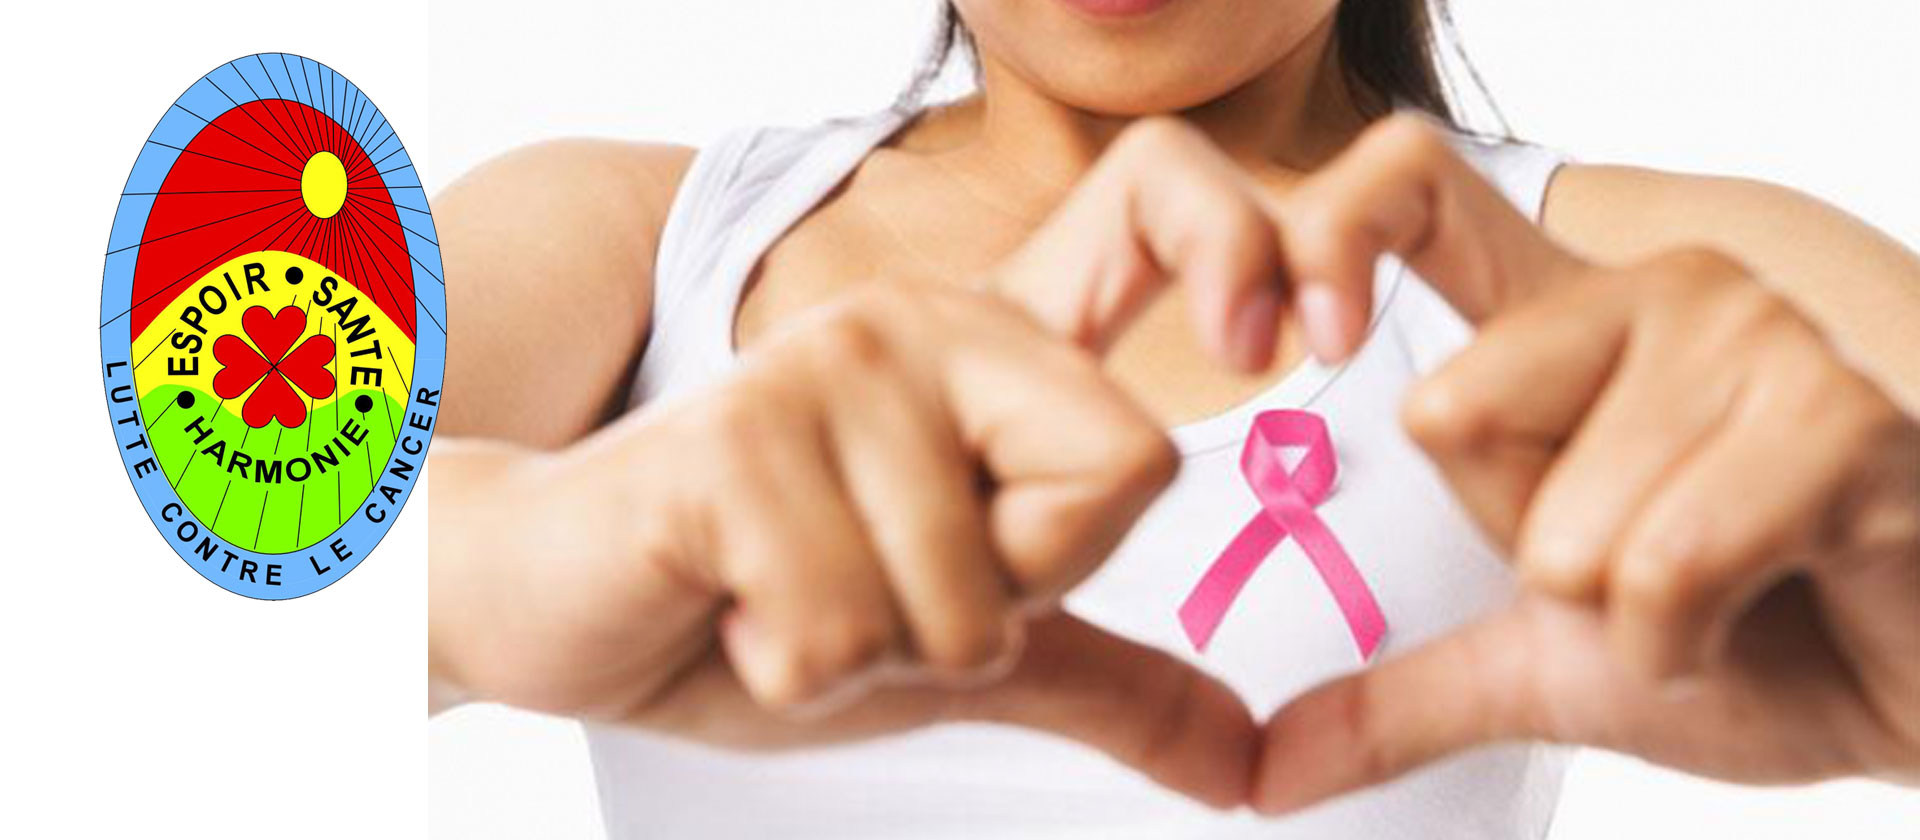 Espoir Santé Harmonie, depuis maintenant plus de 33 ans dans la lutte contre le cancer